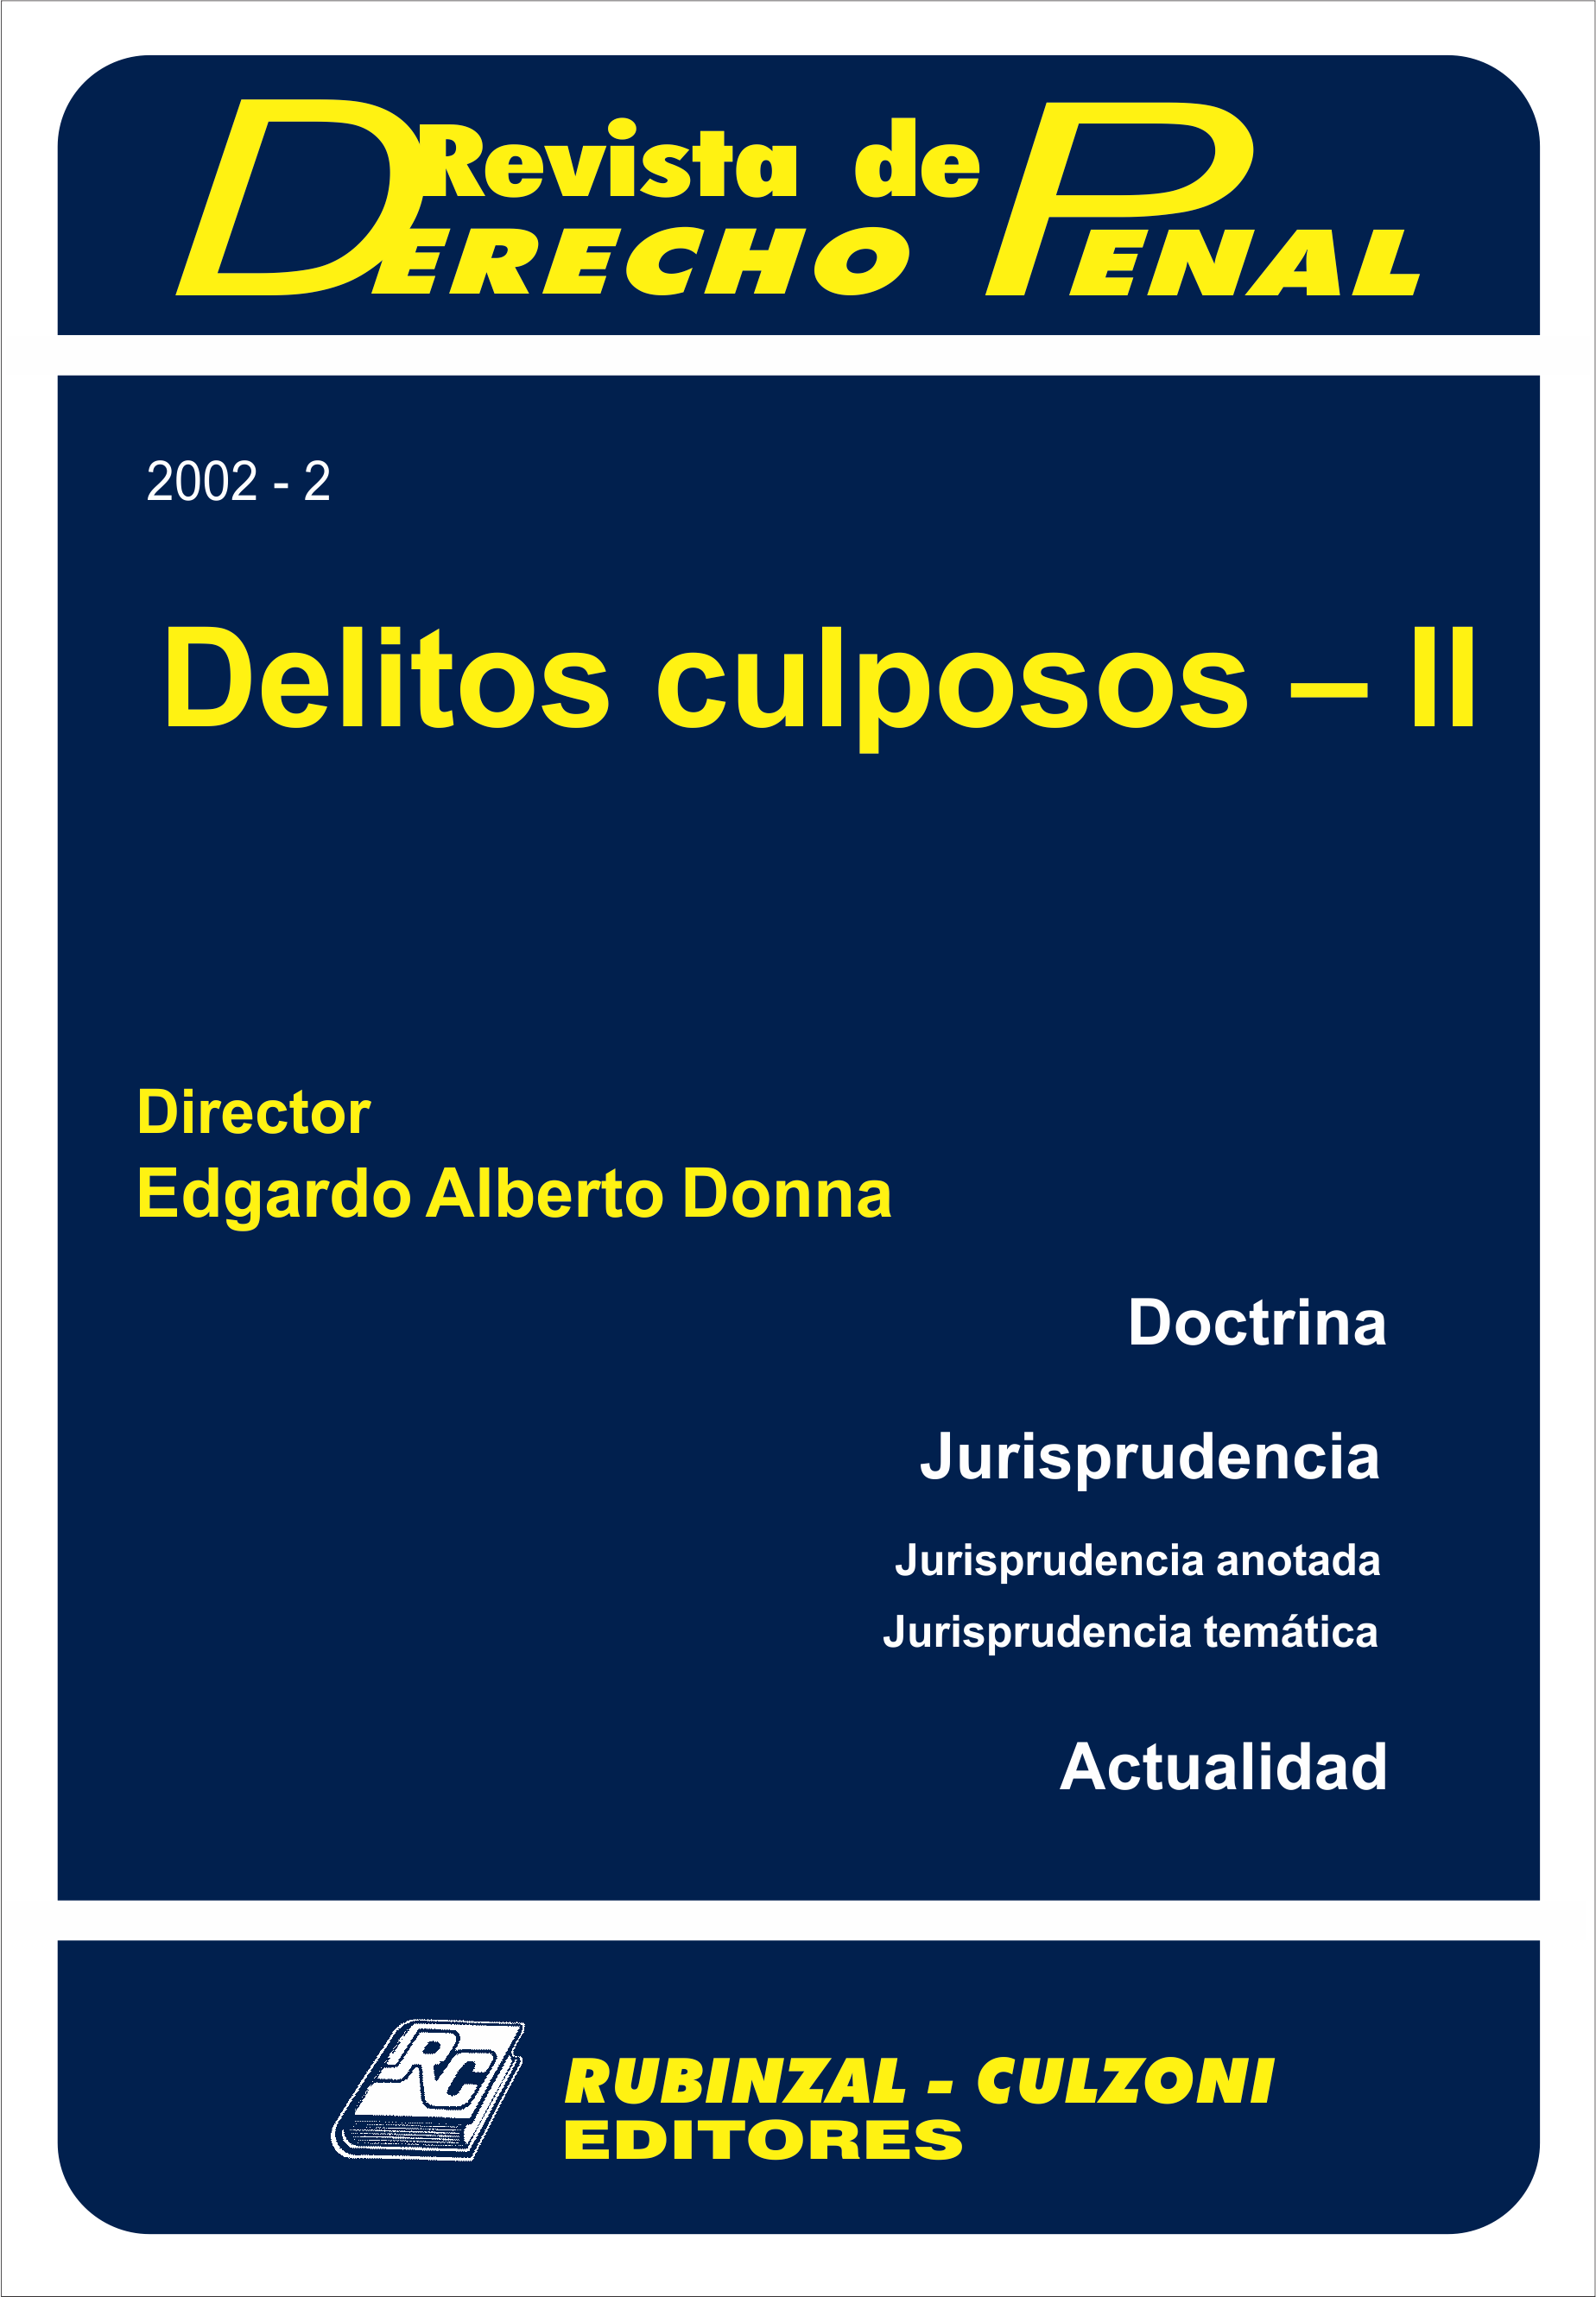 Revista de Derecho Penal - Delitos culposos - II. [2002-2]